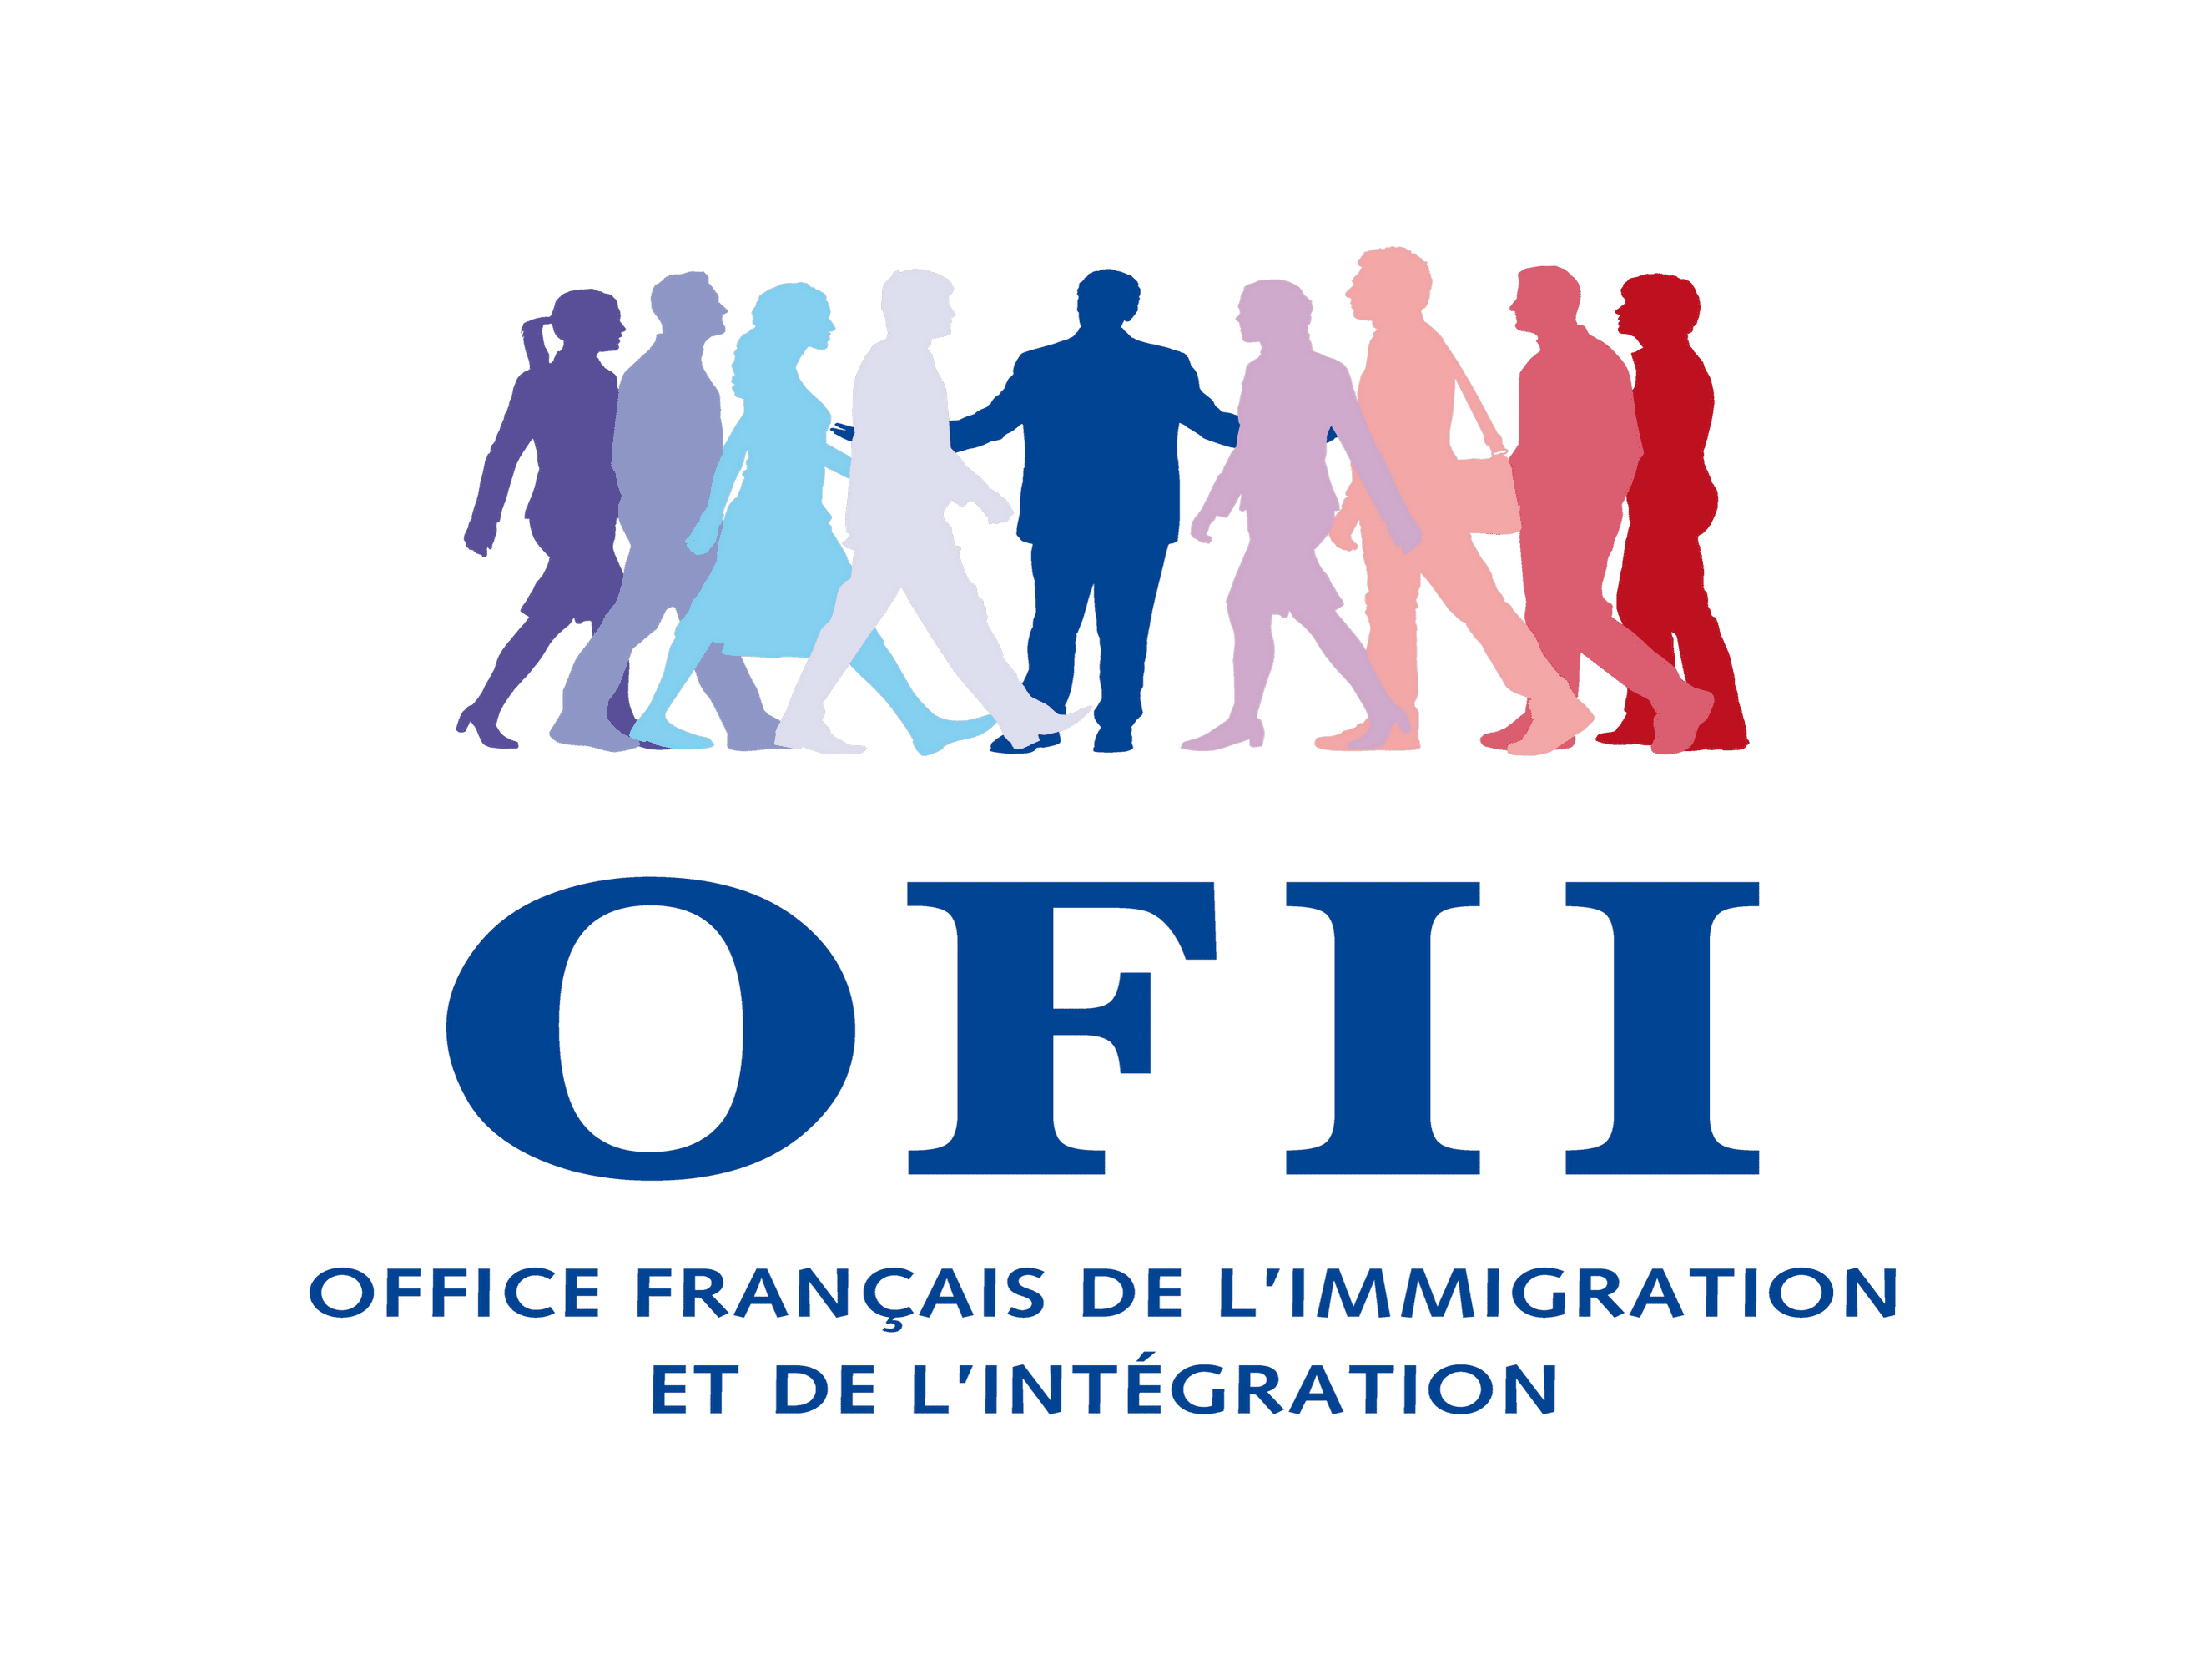 Logo OFII